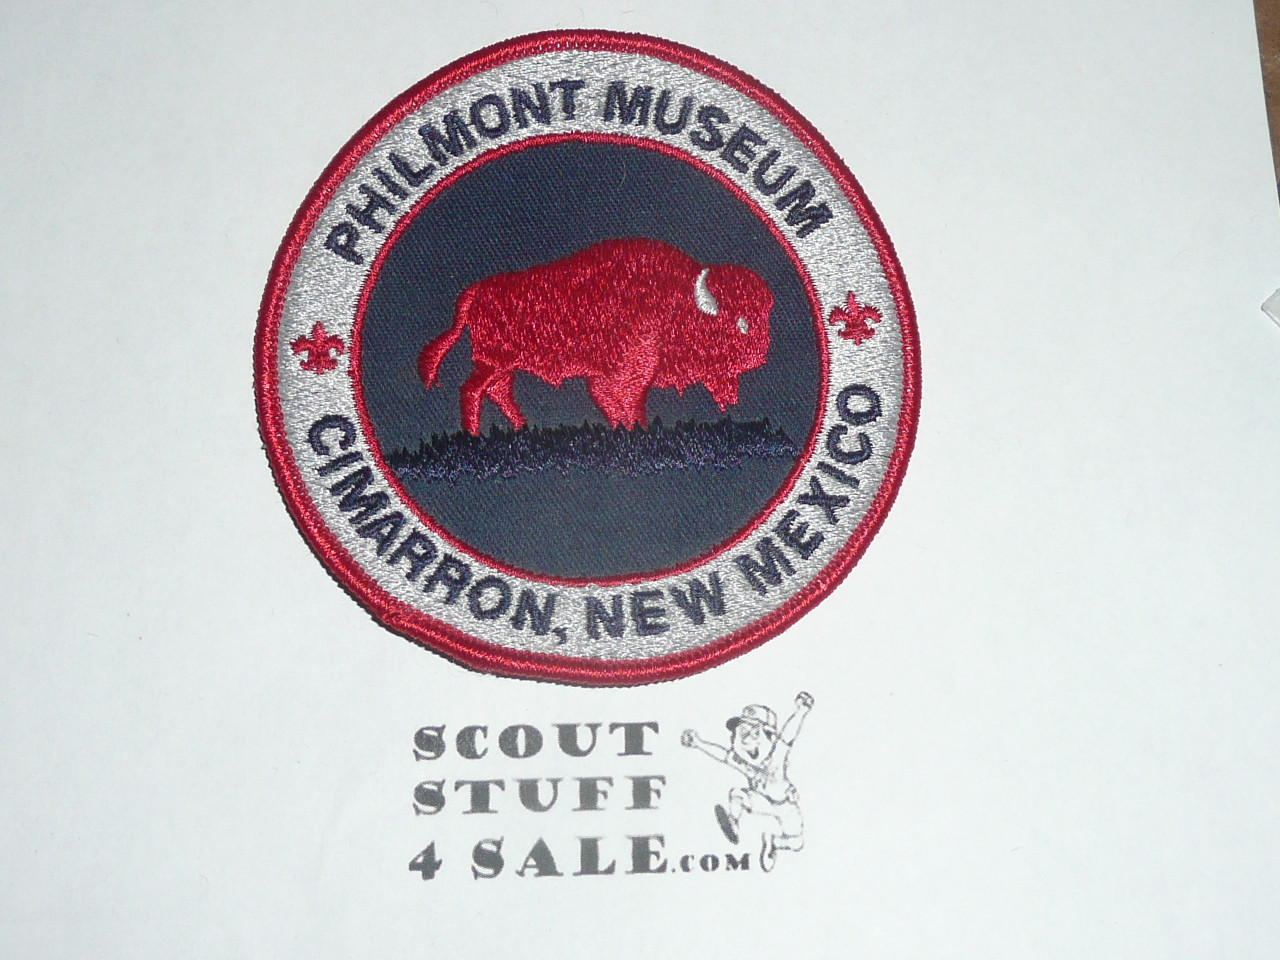 Philmont Scout Ranch, Philmont Museum Jacket Patch